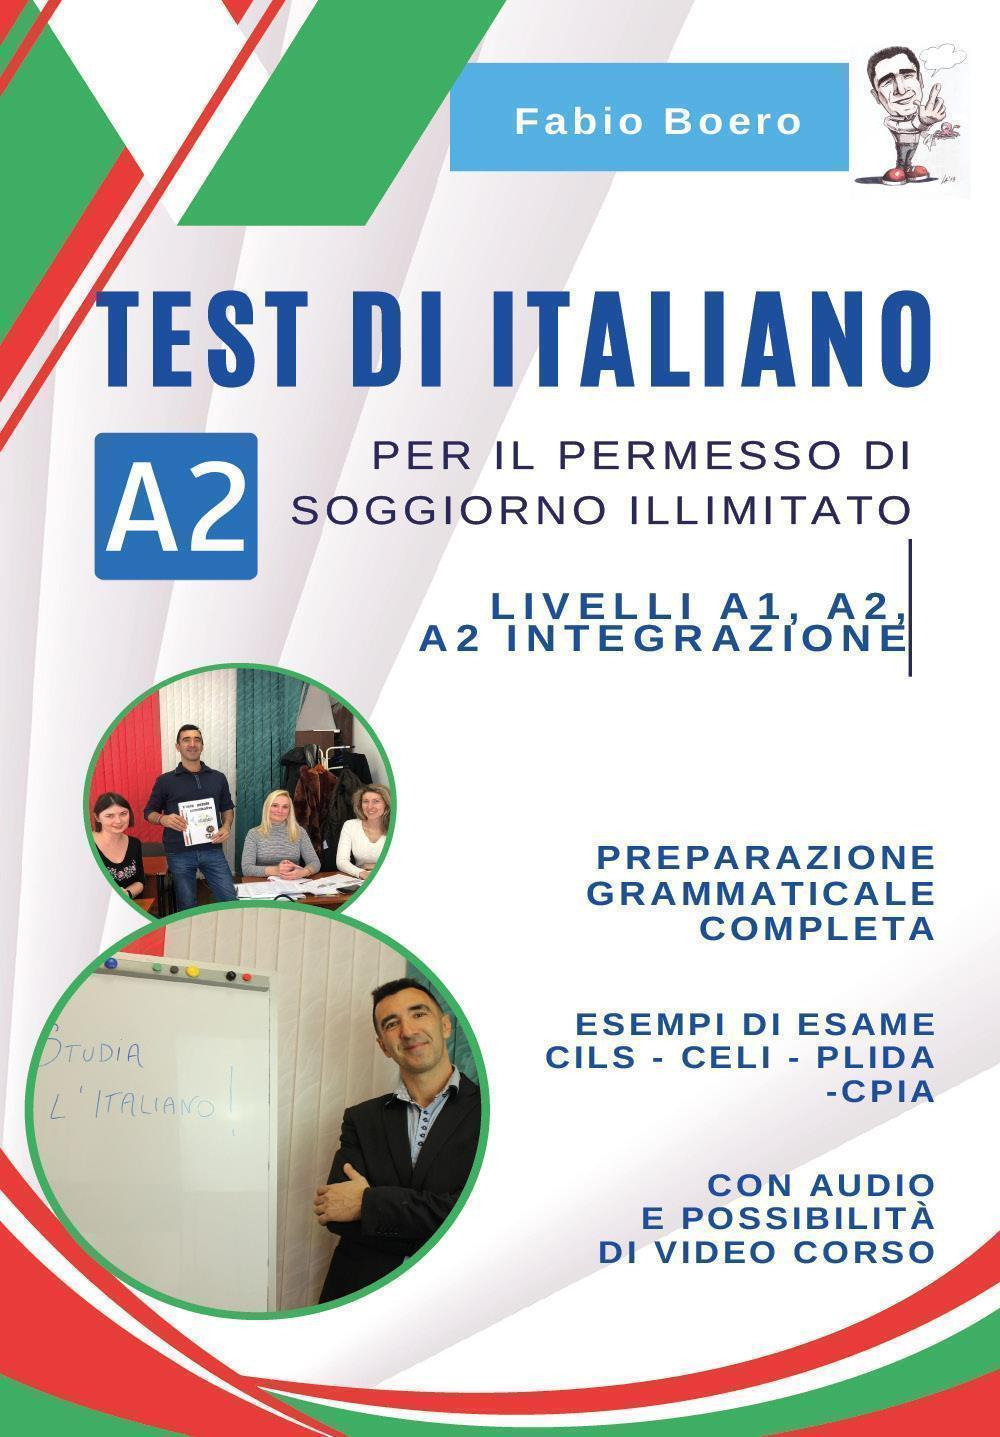 Test di italiano A2 per il permesso di soggiorno illimitato